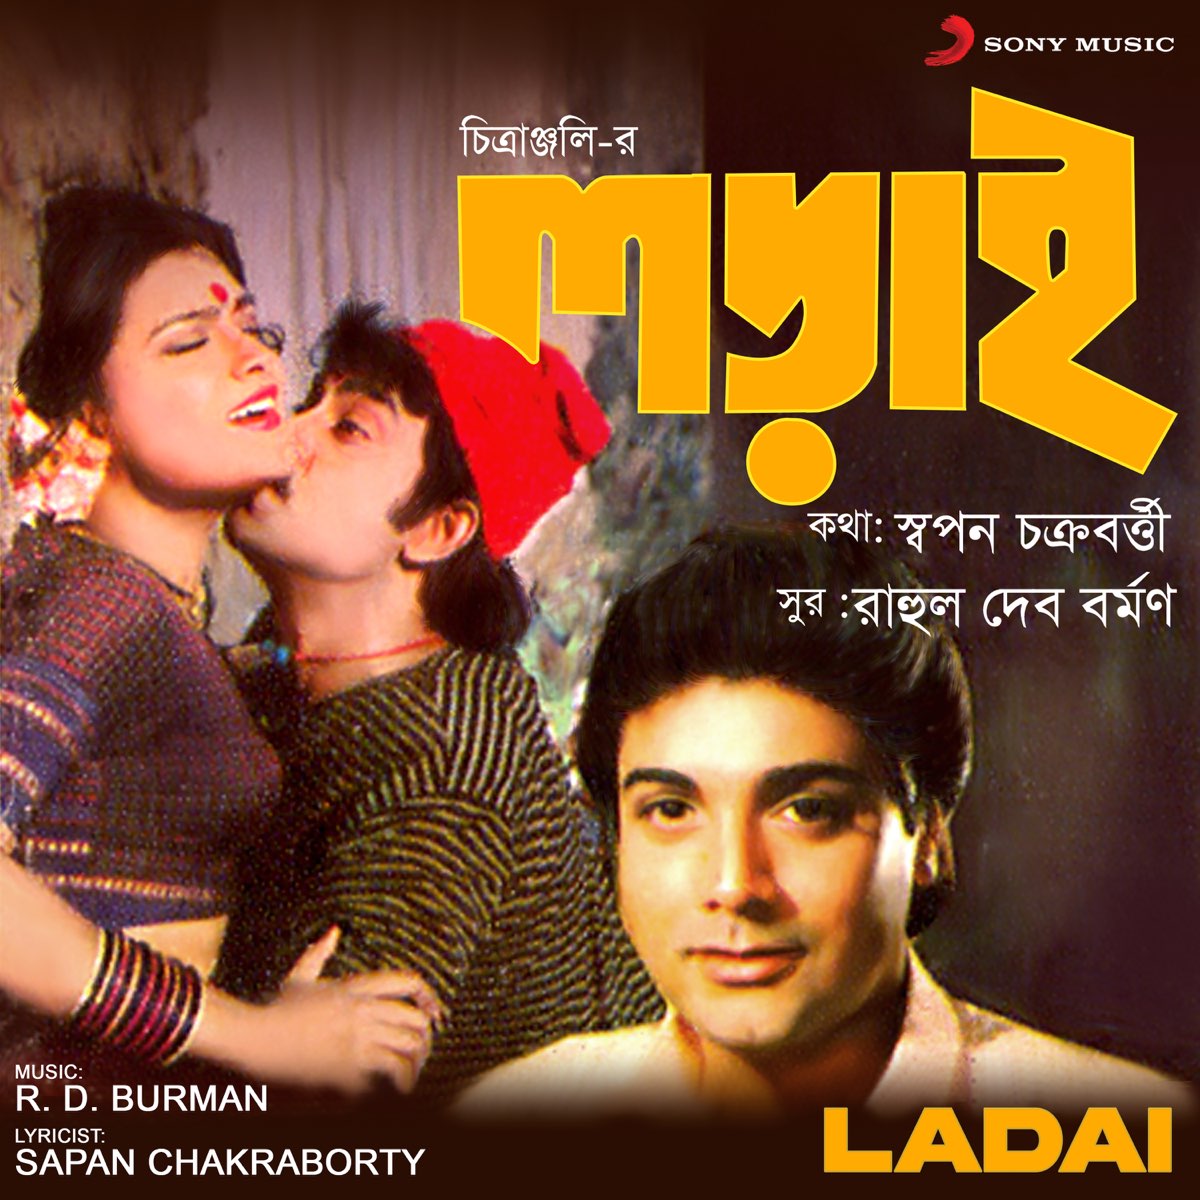 Ladai (Original Motion Picture Soundtrack) - Album by R.D. Burman - Apple  Music